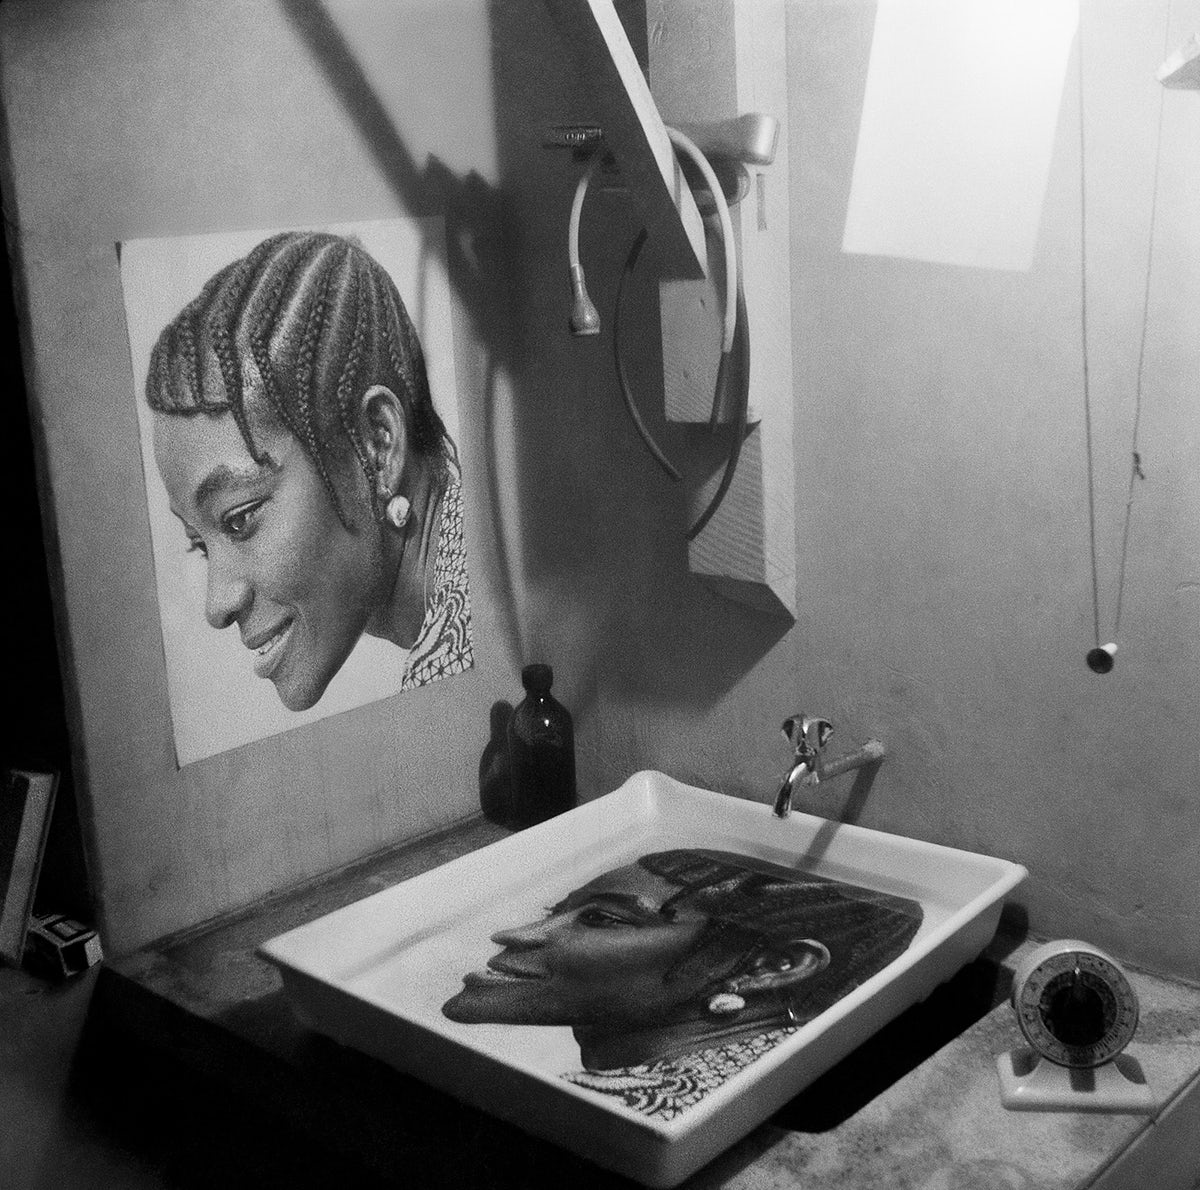 Print in progress, Studio X23, Accra, c. 1972